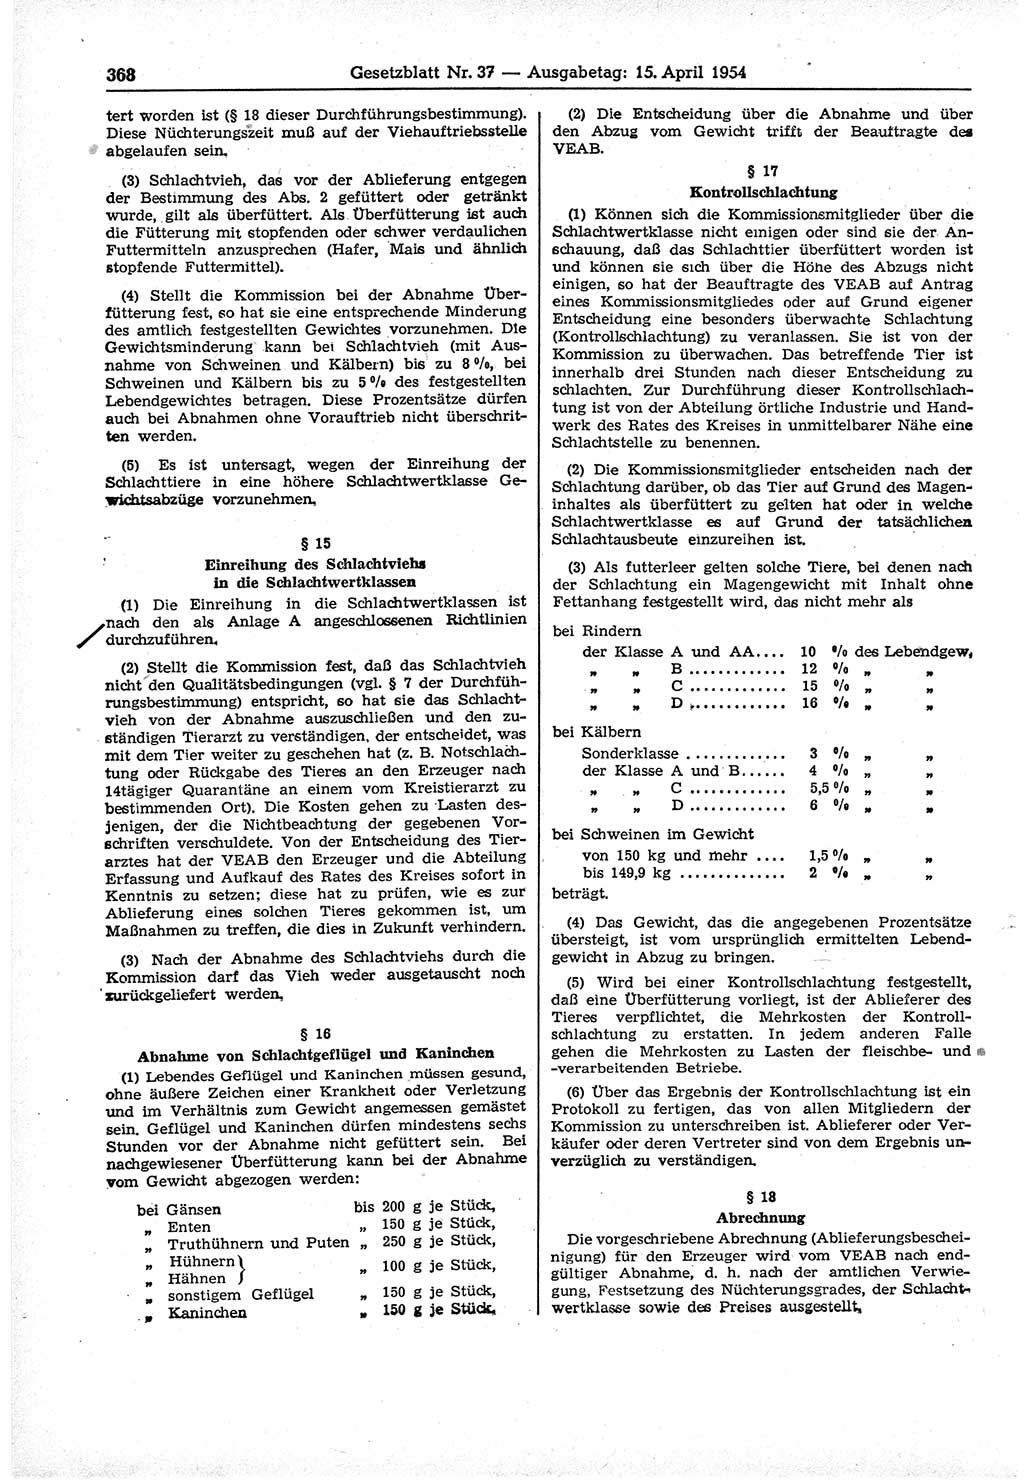 Gesetzblatt (GBl.) der Deutschen Demokratischen Republik (DDR) 1954, Seite 368 (GBl. DDR 1954, S. 368)